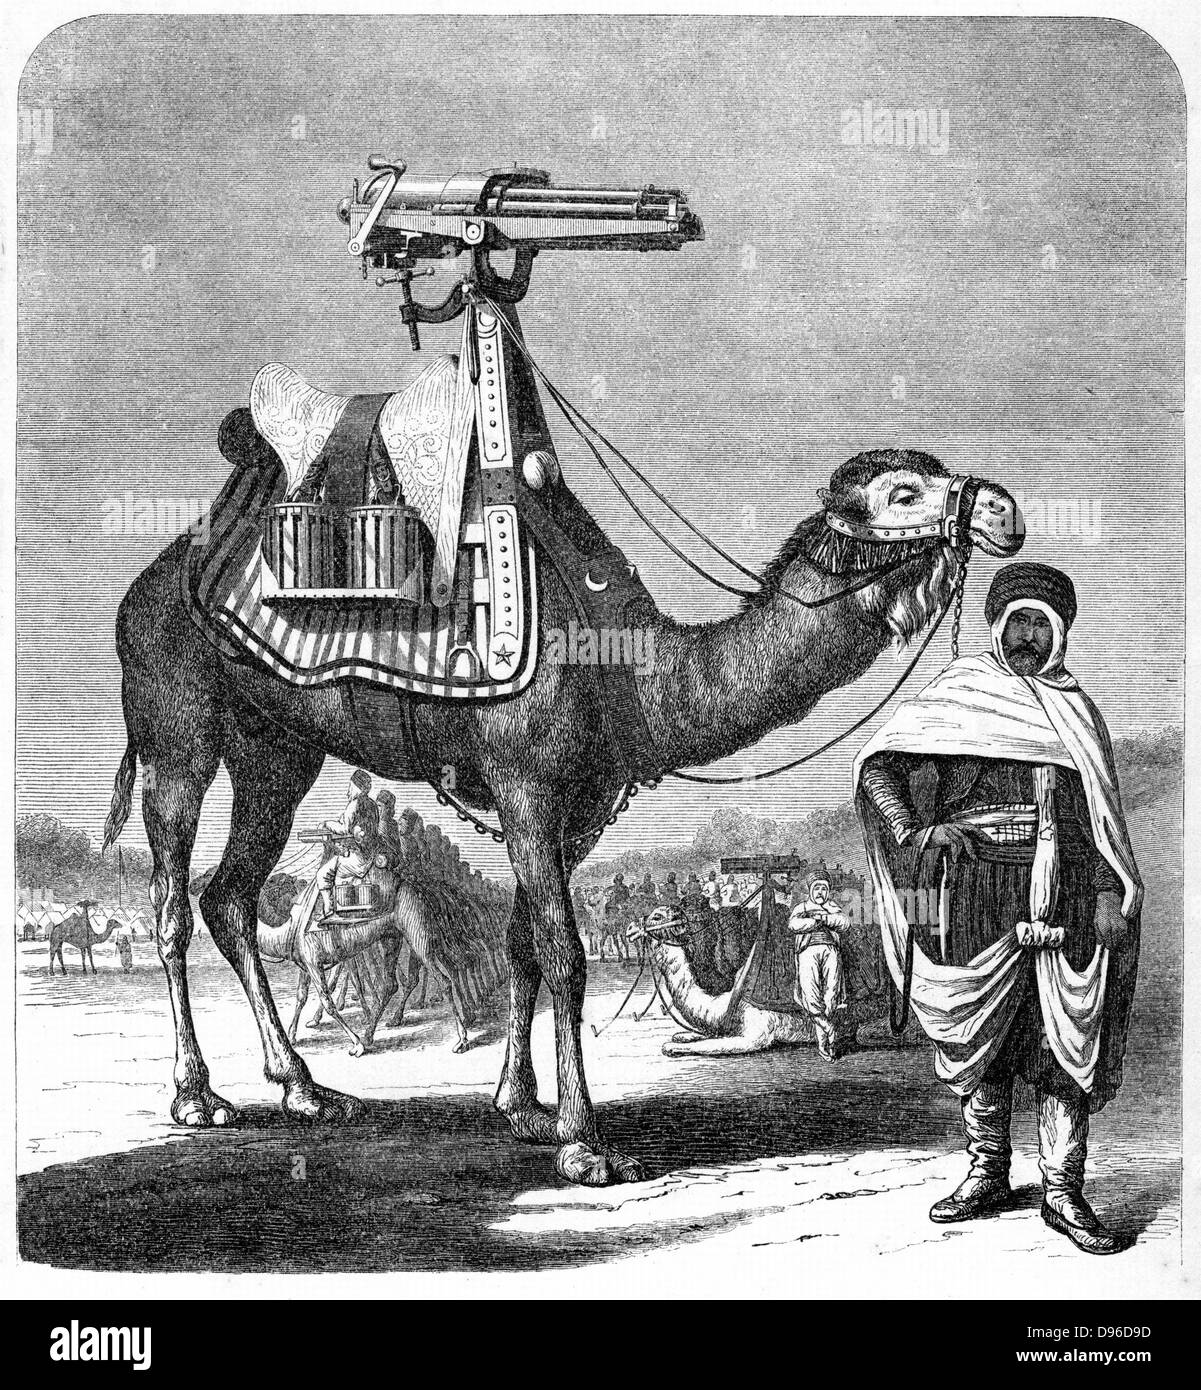 Mitrailleuse Gatling Gun Rapid Fire (1861-1862) : modèle monté sur des chameaux. À partir de 'La science' New York, 1862. Gravure Banque D'Images